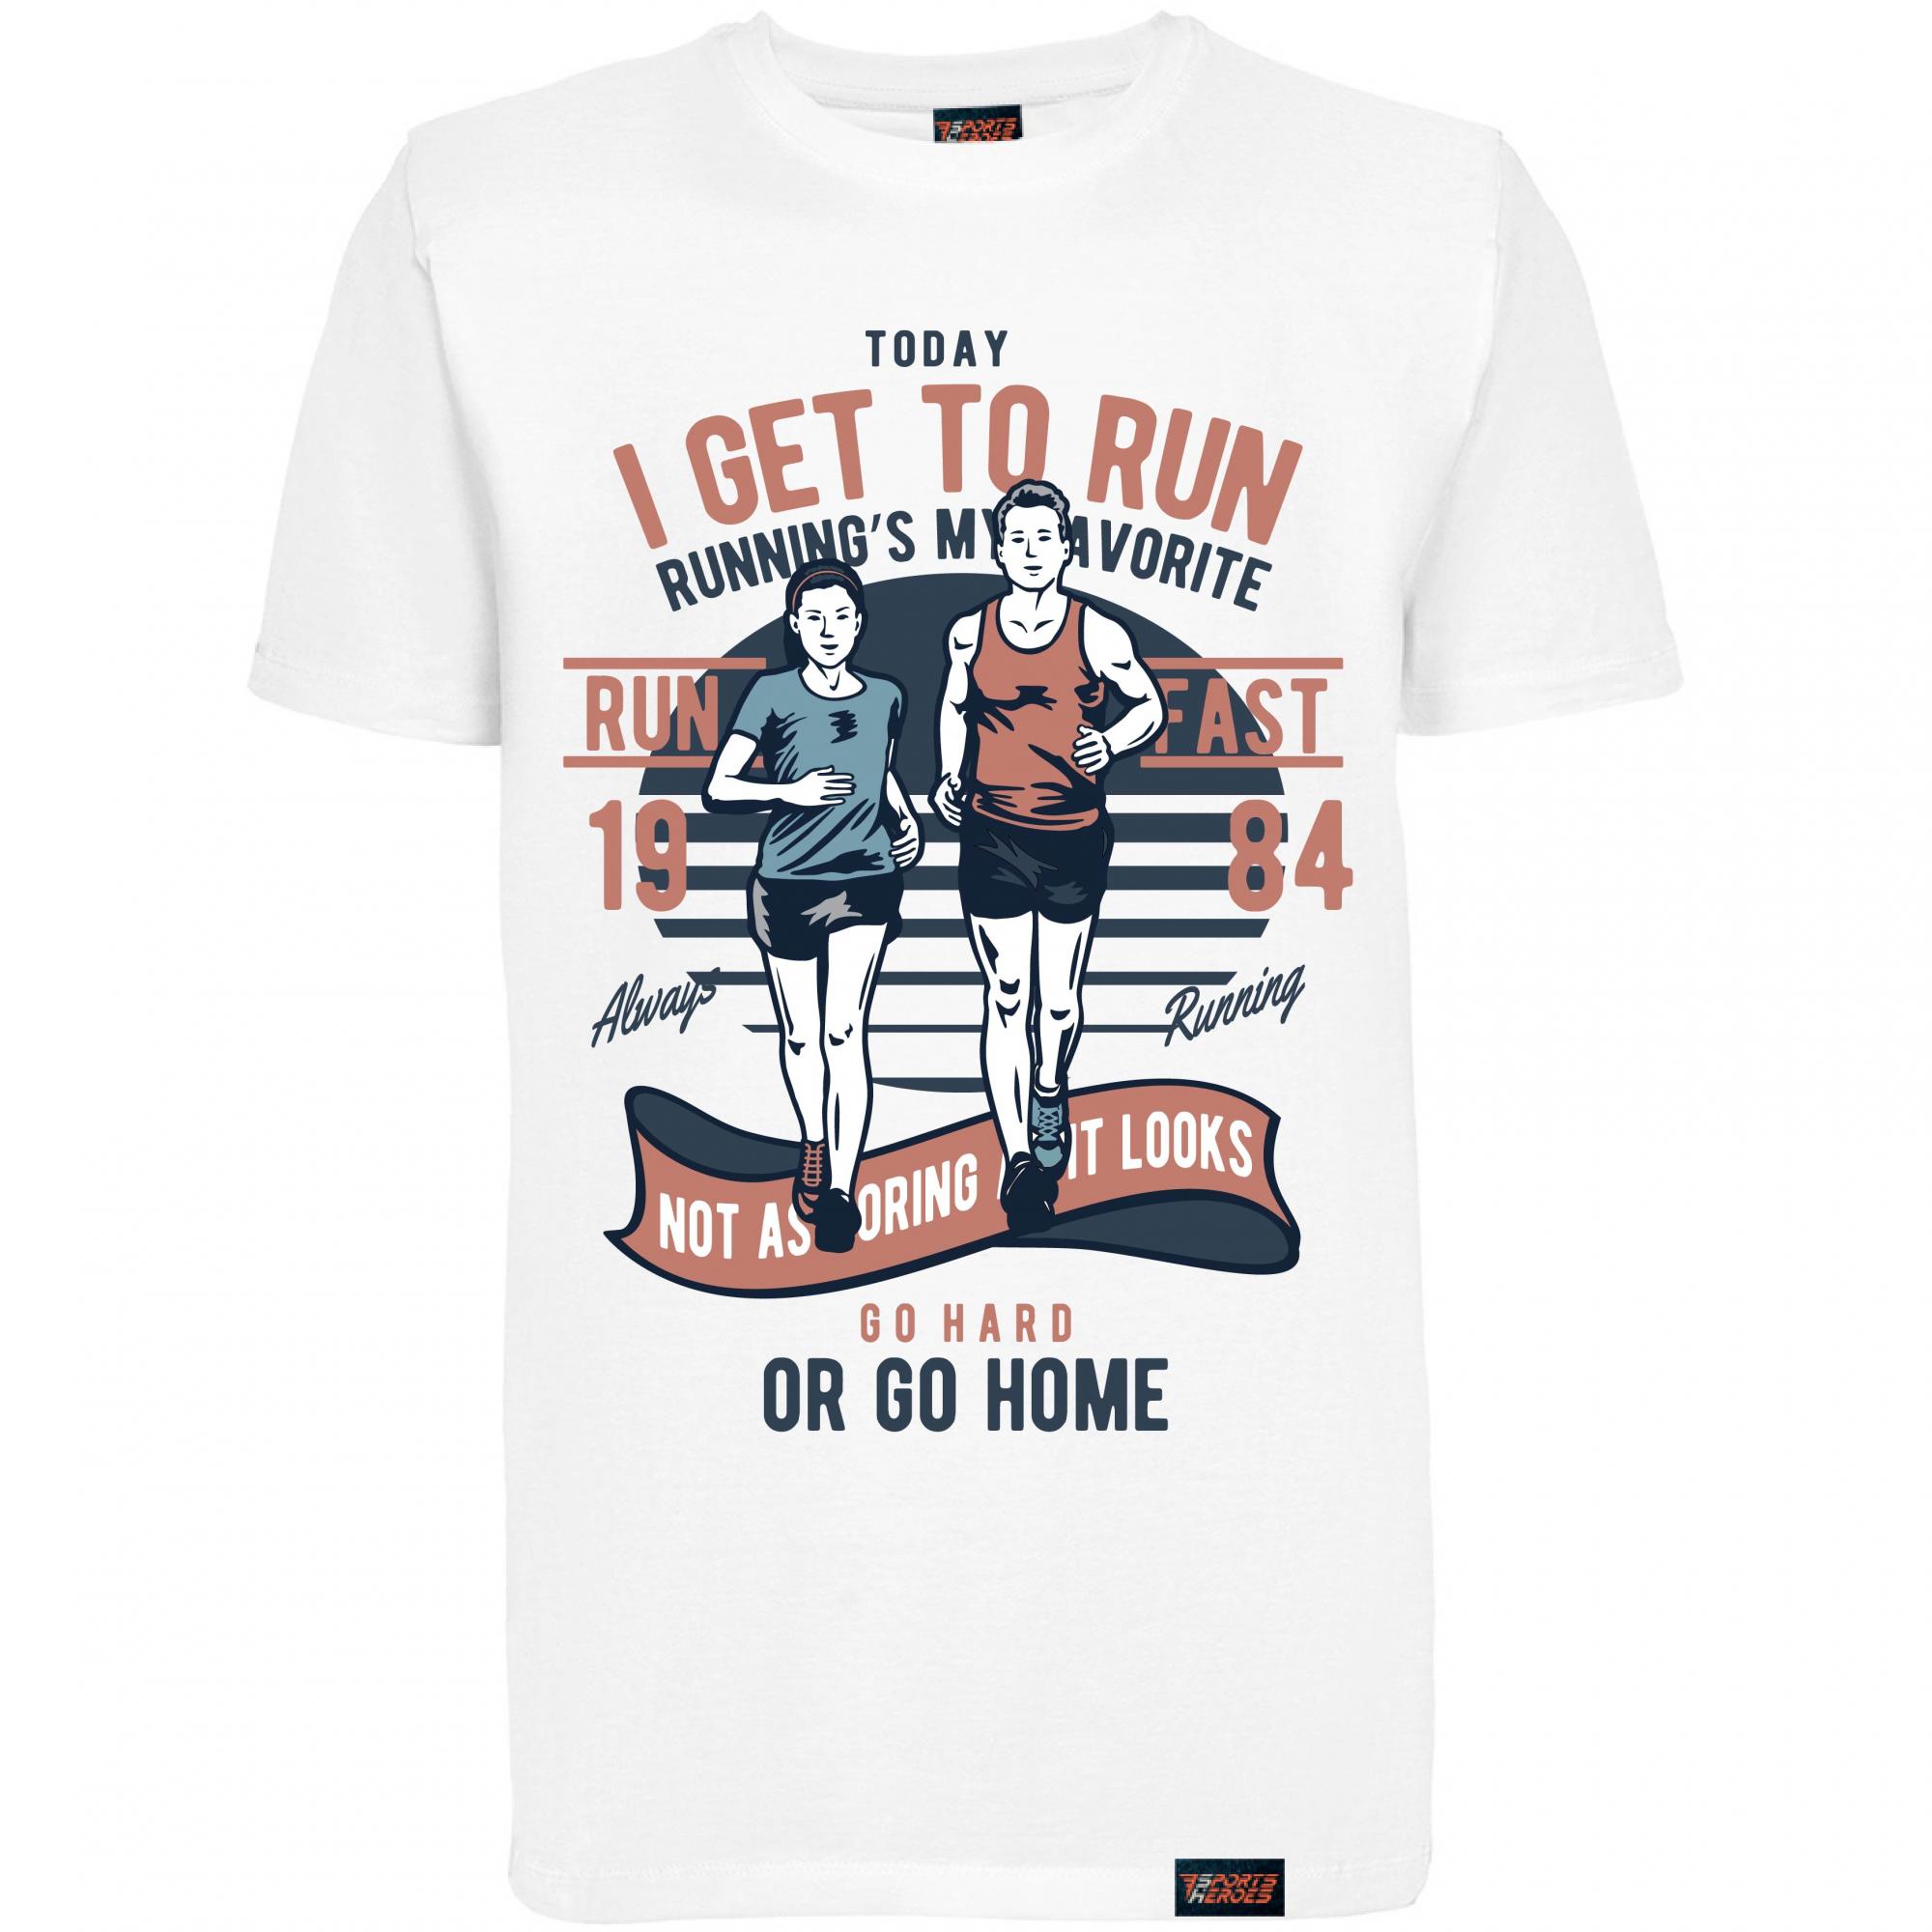 Бегал почему футболка сухая. Футболка забег 2020. Футболка hard blog. Футболки для забега с надписью. Футболка для бега Run Run.